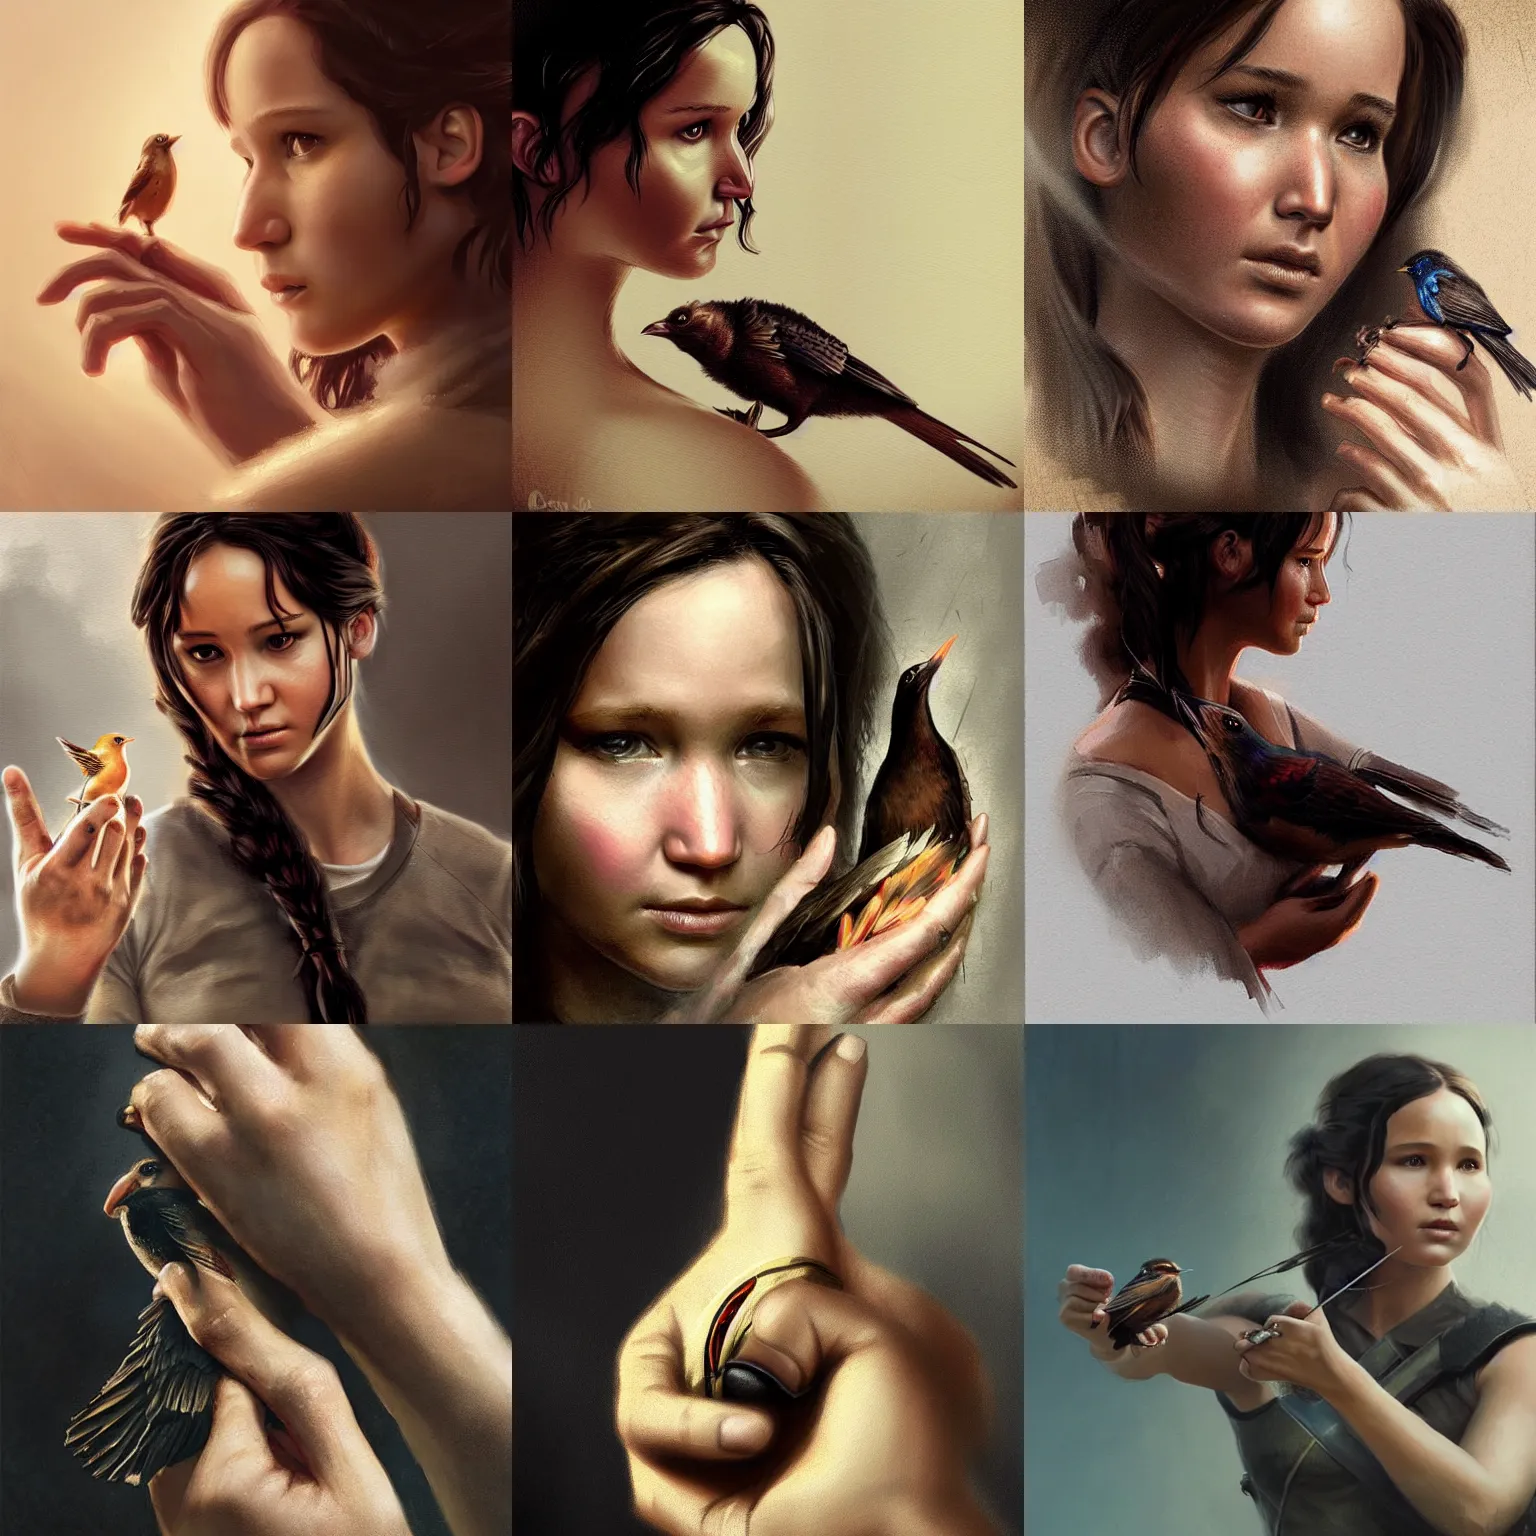 Prompt: Katniss Everdeen holding a bird in her handpalm, closeup of hand, digital portrait by Greg Rutkowski